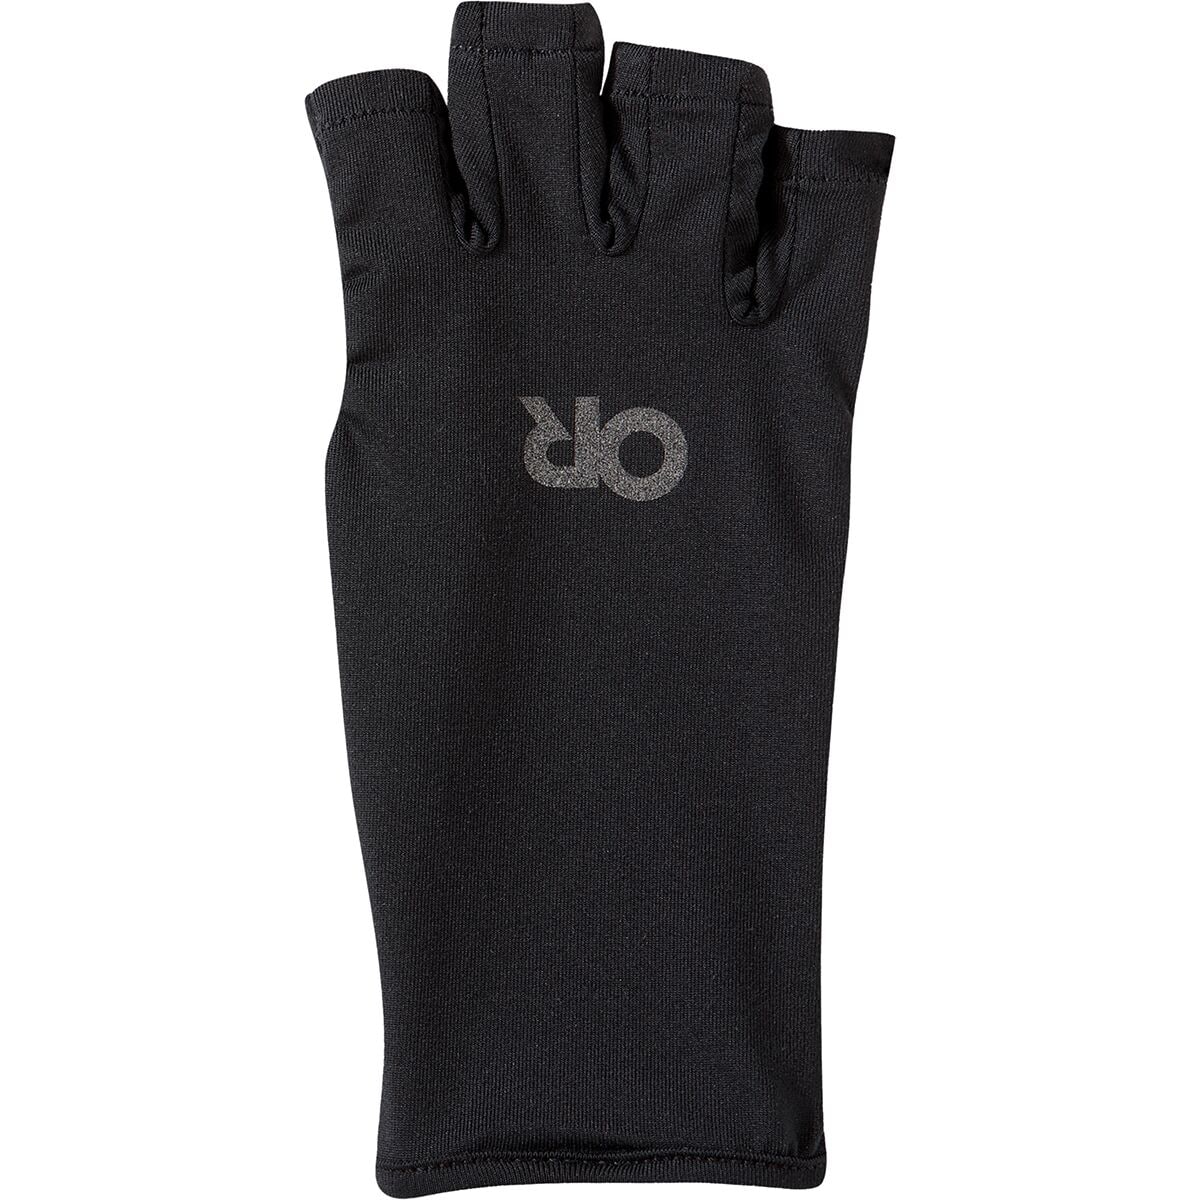  Astro Fishing Gloves Mens Womens Fingerless Gloves